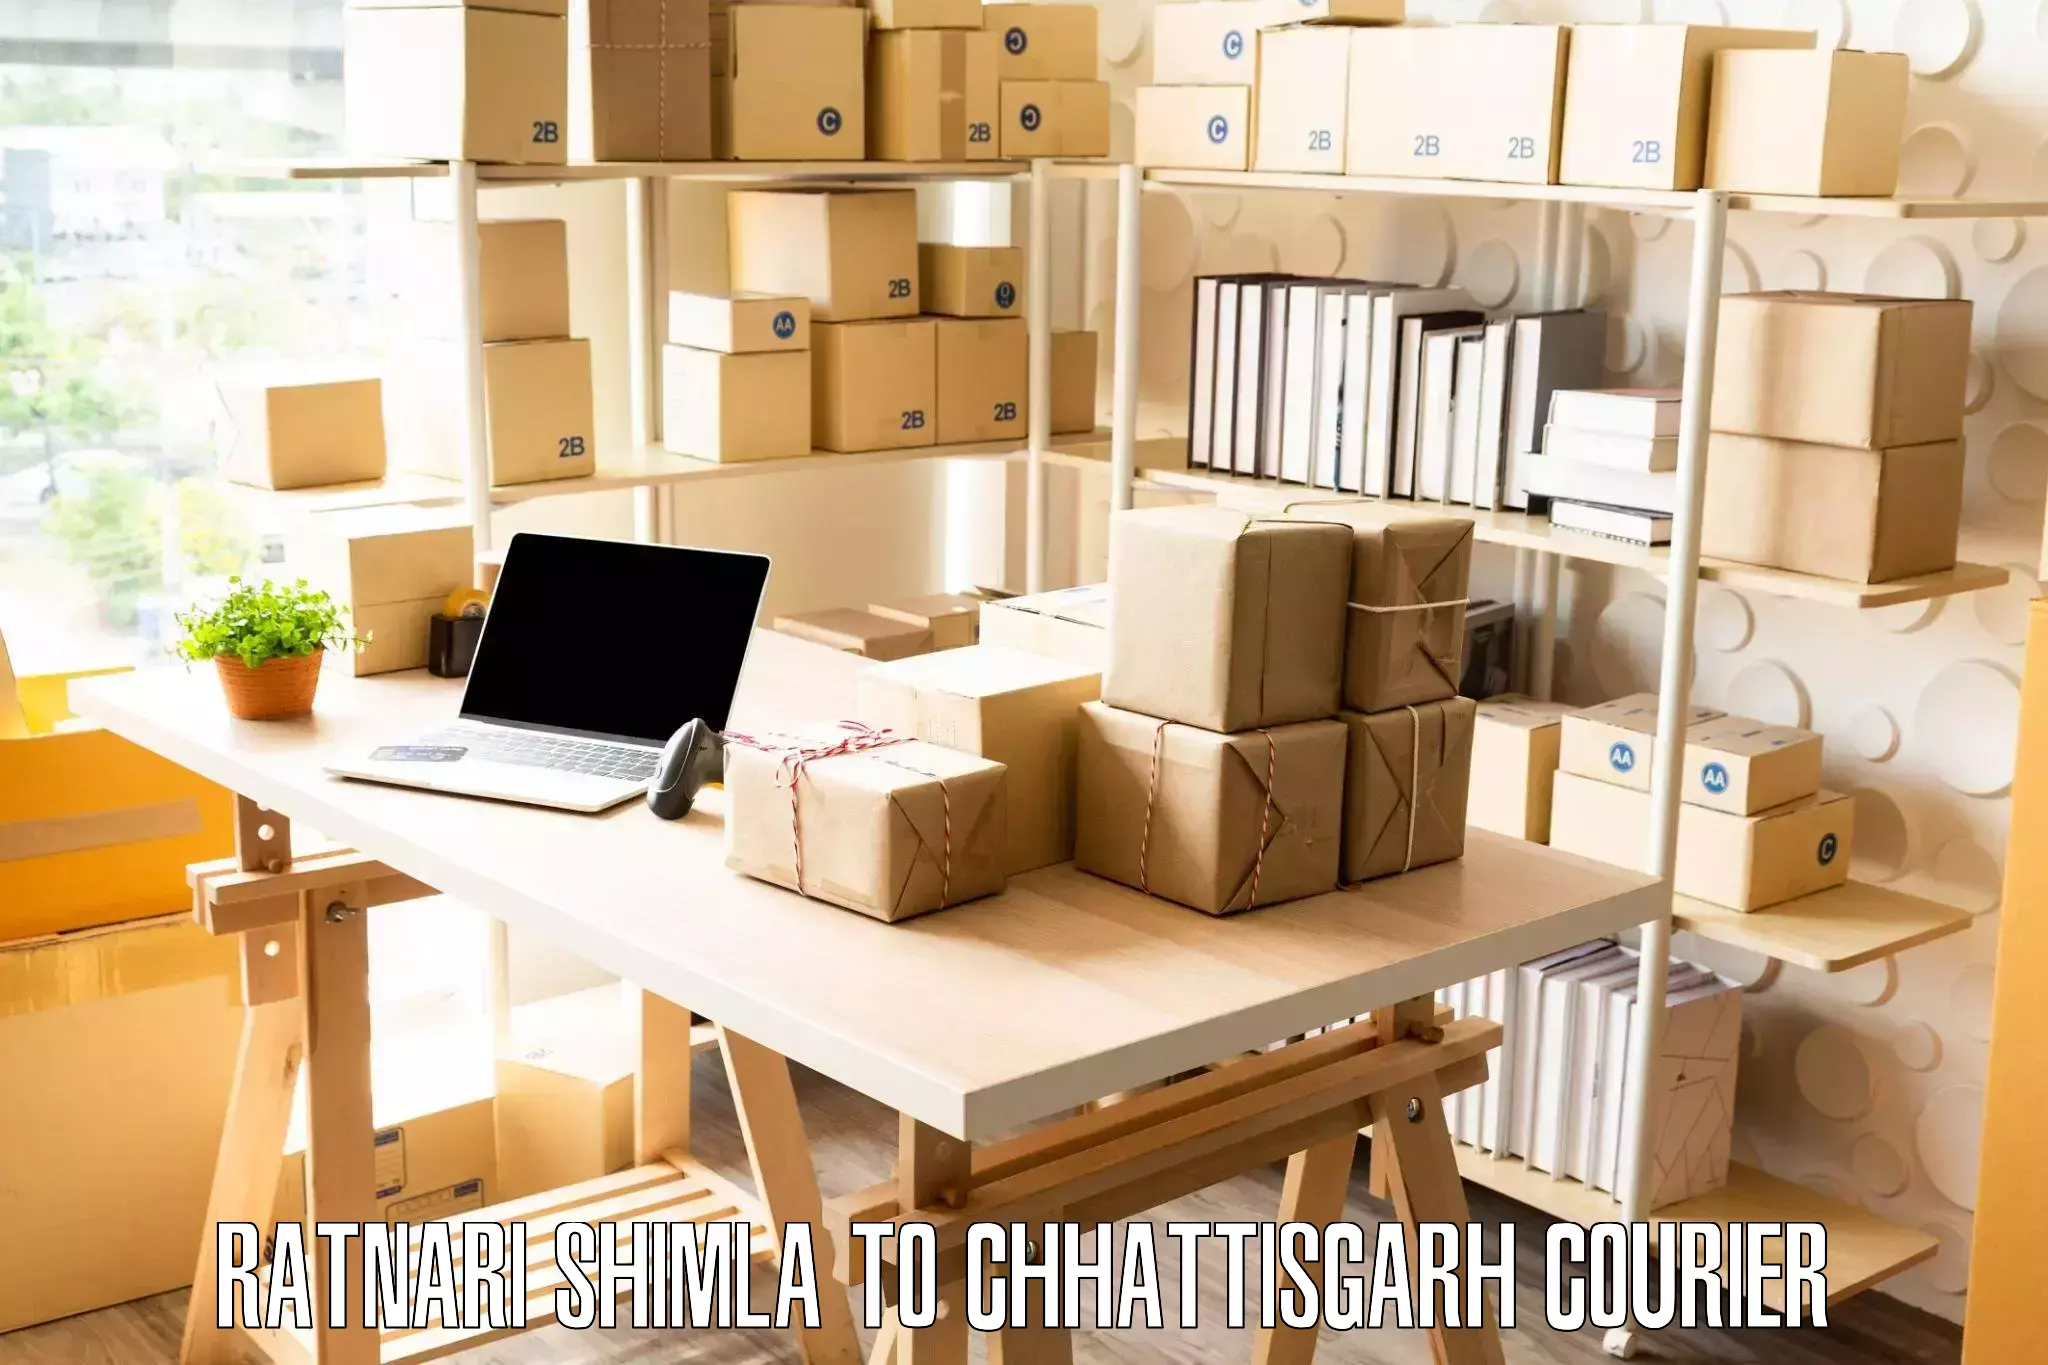 Furniture moving experts Ratnari Shimla to Pithora